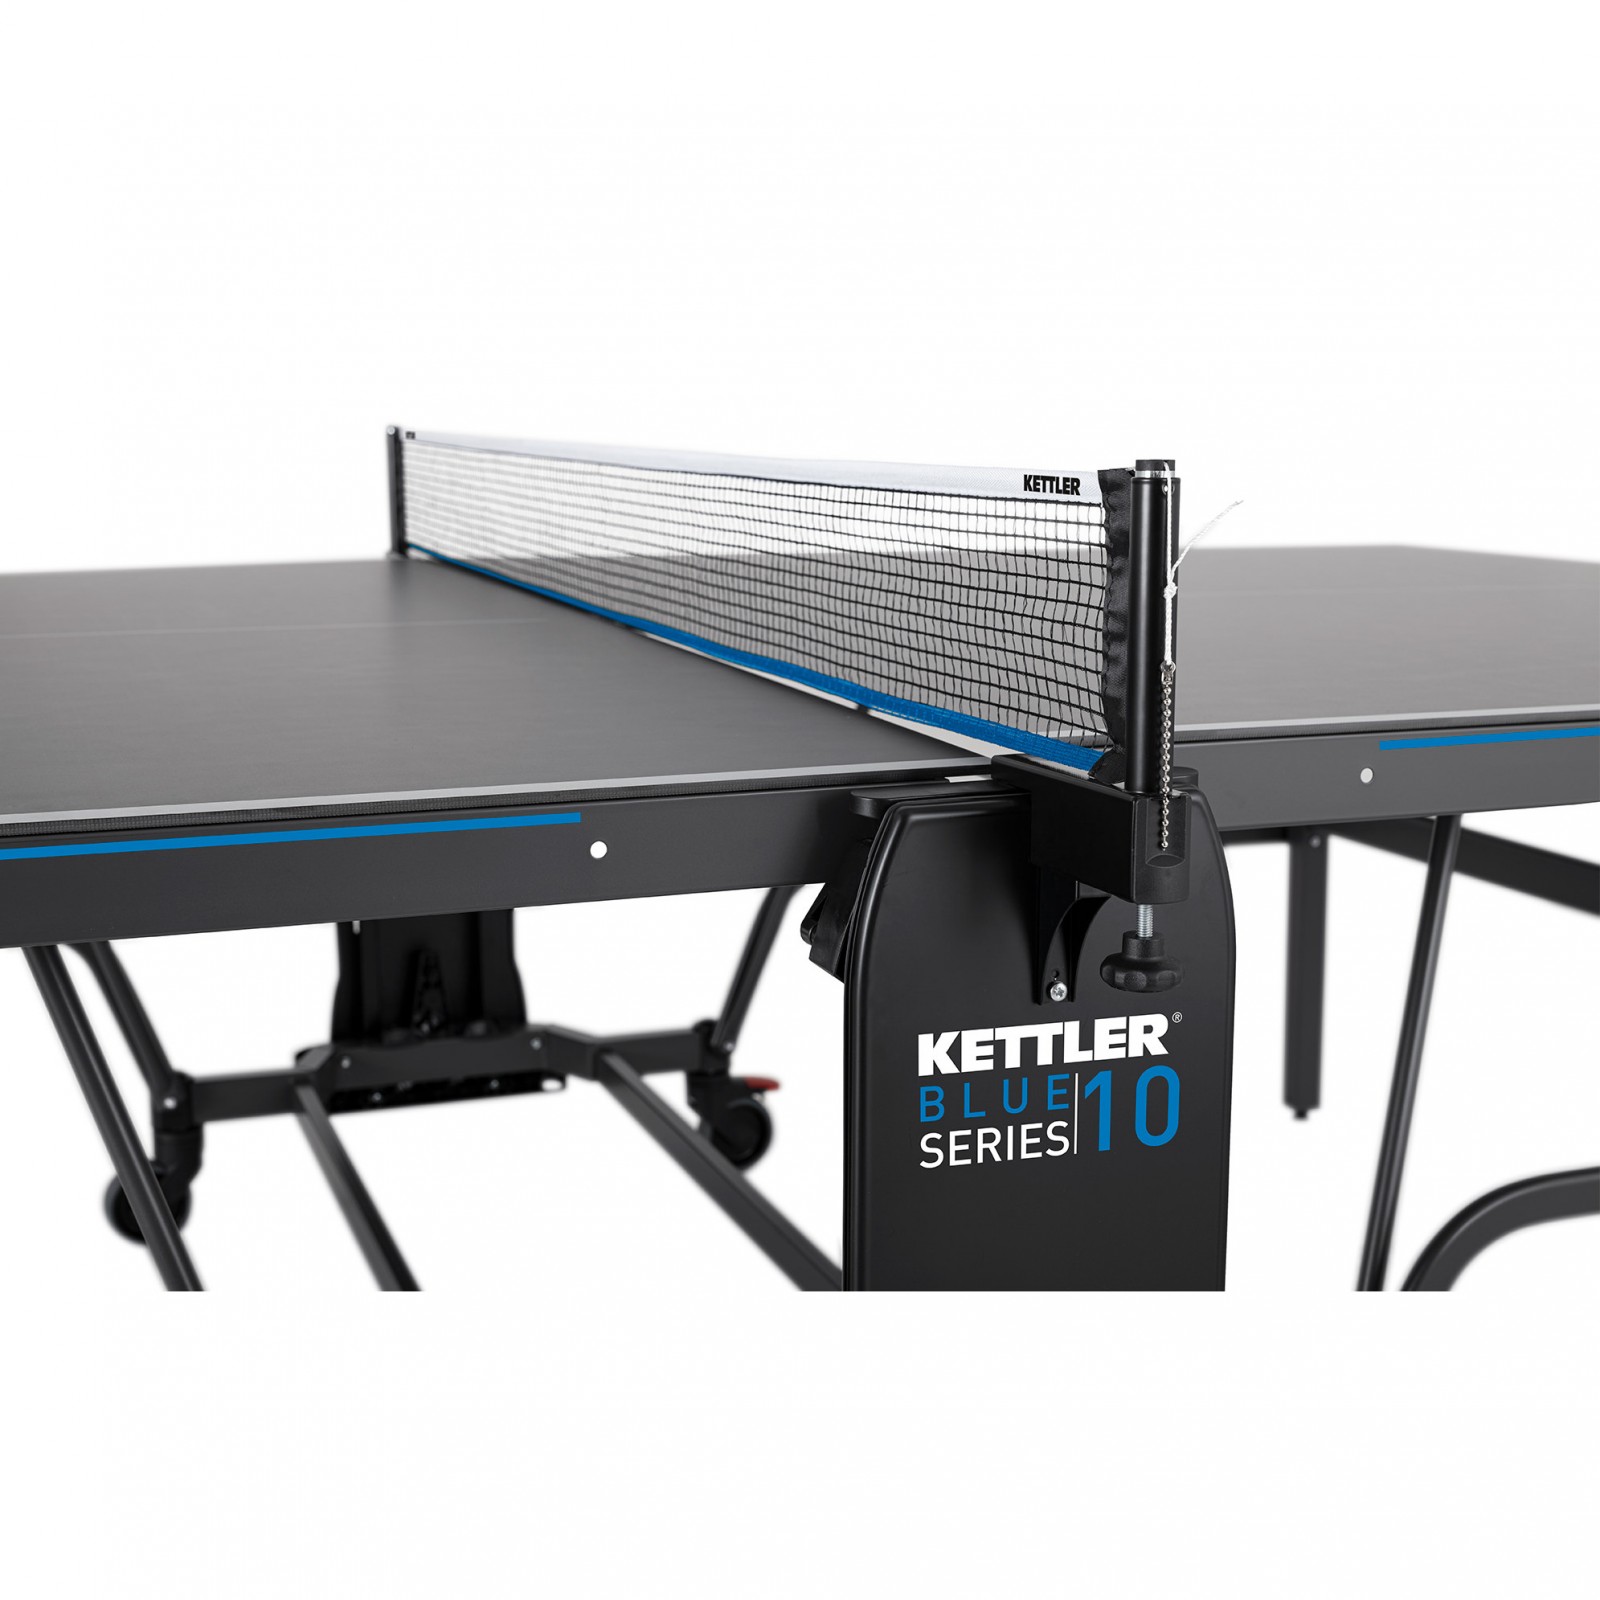 Стол для настольного тенниса Кетлер. Kettler Outdoor теннисный стол. Стол для пинг понга Kettler. Kettler Outdoor 10.